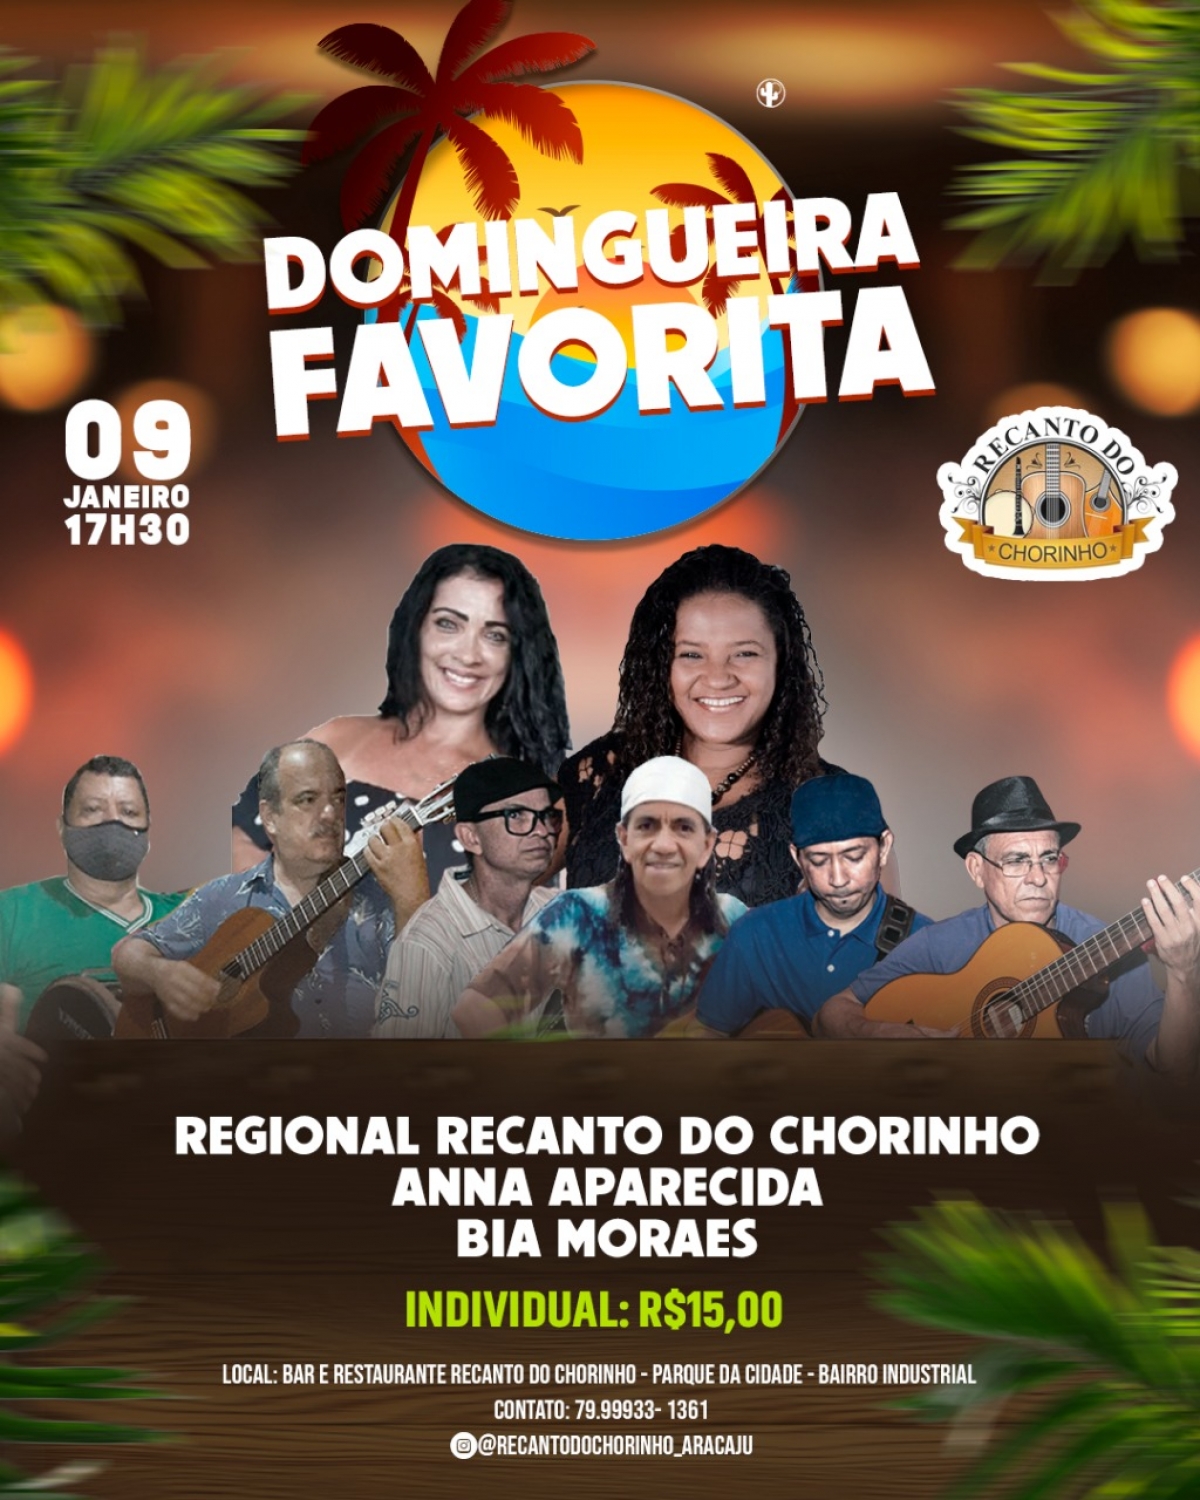 Bia Moraes é atração na Domingueira Favorita do Recanto do Chorinho (Imagem: Divulgação)